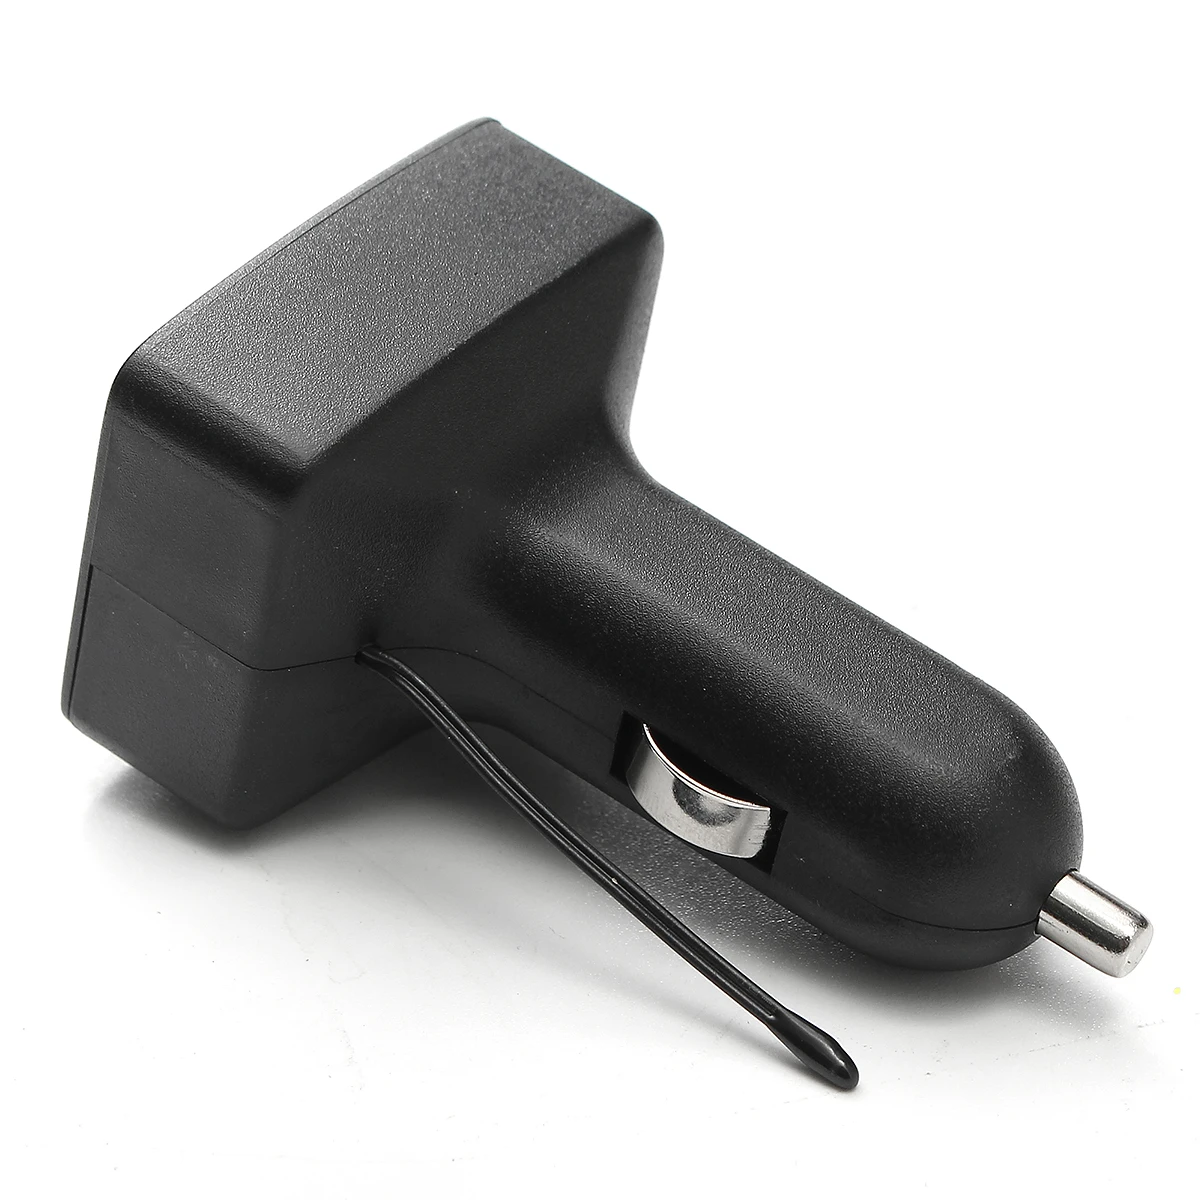 12 В 24 В Универсальный двойной USB интерфейс Автомобильное зарядное устройство с Вольтметр Амперметр термометр ЖК-дисплей многофункциональный автомобильный комплект